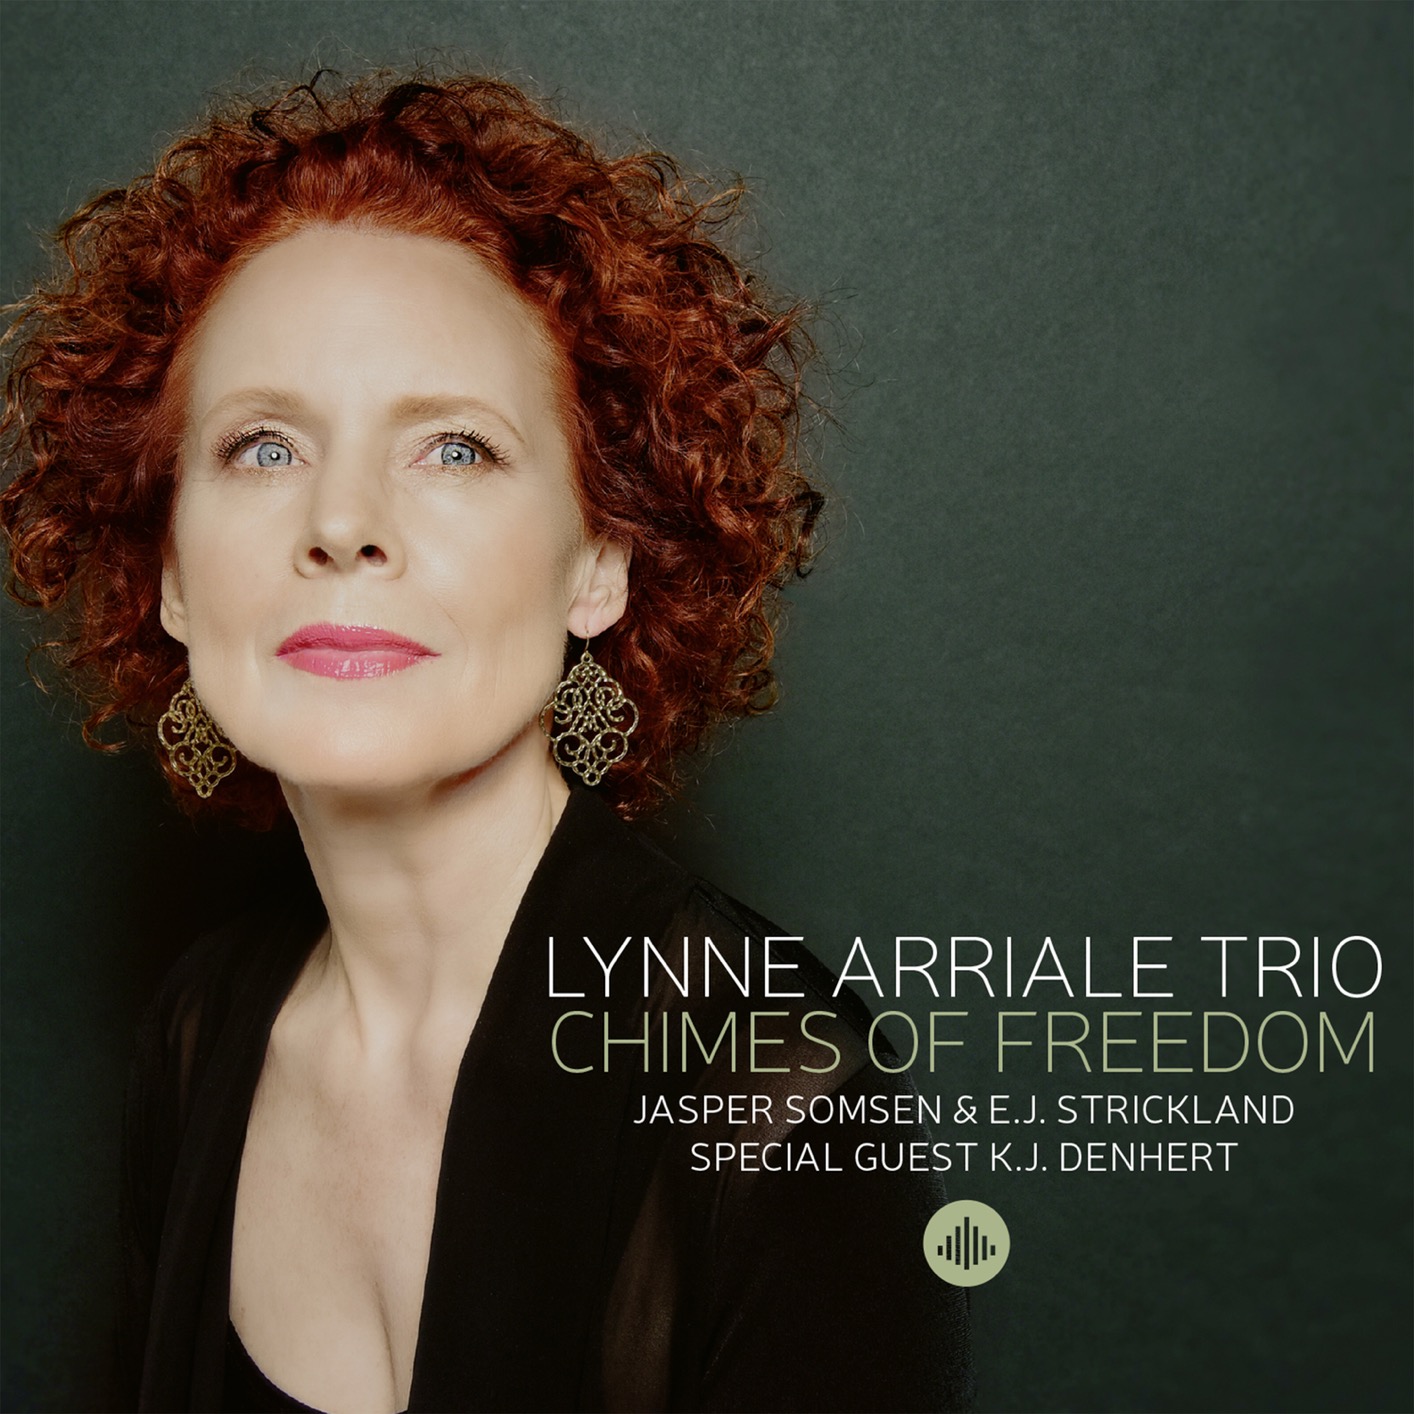 Lynne Arriale Trio – Chimes of Freedom (2020) [FLAC 24bit/96kHz]